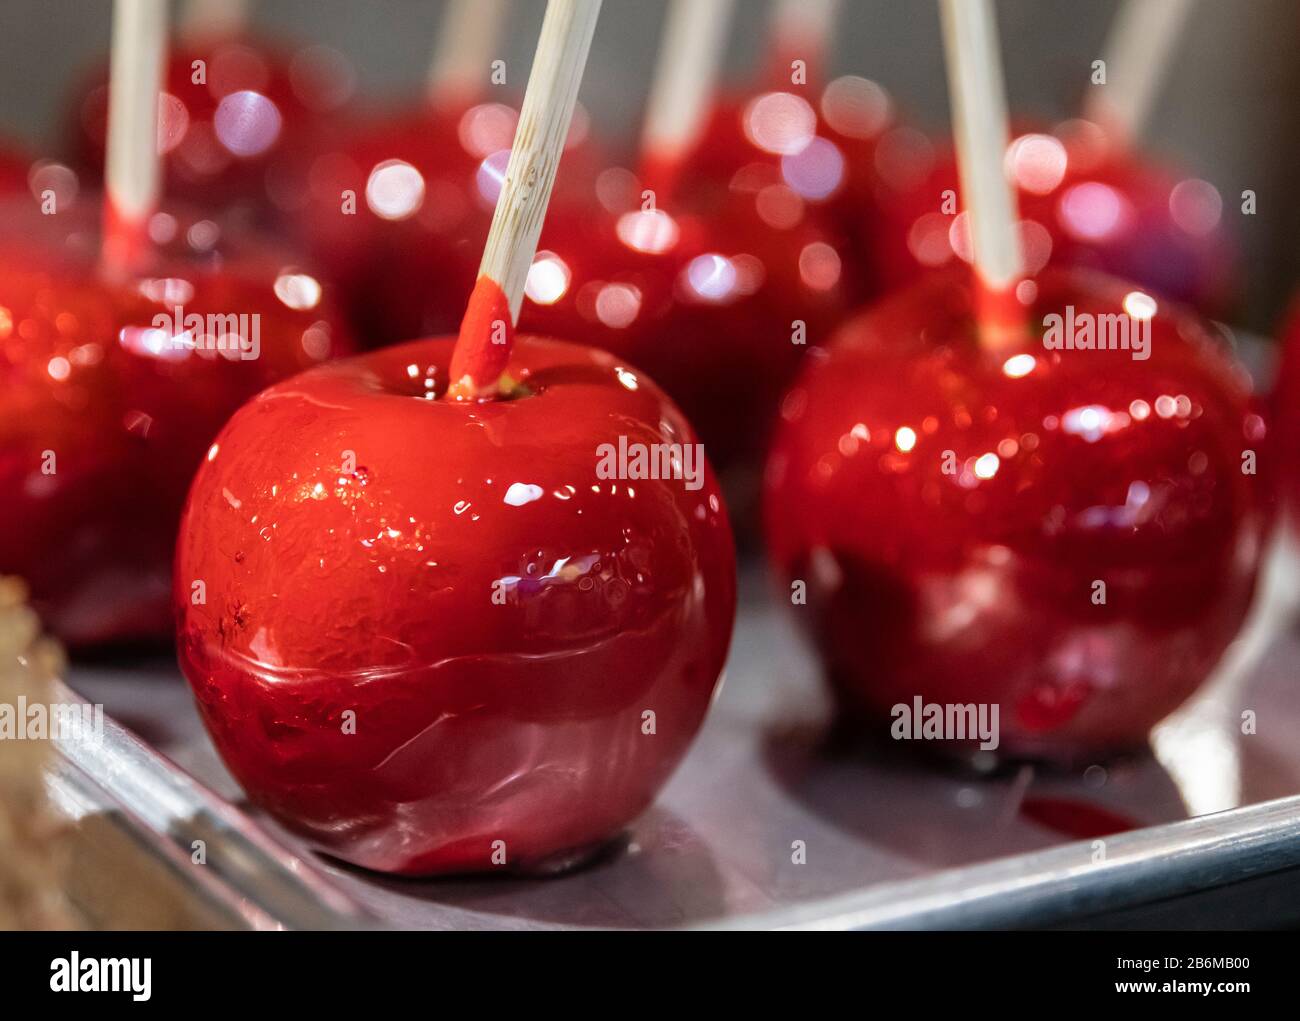 Candy apple treats. Stock Photo